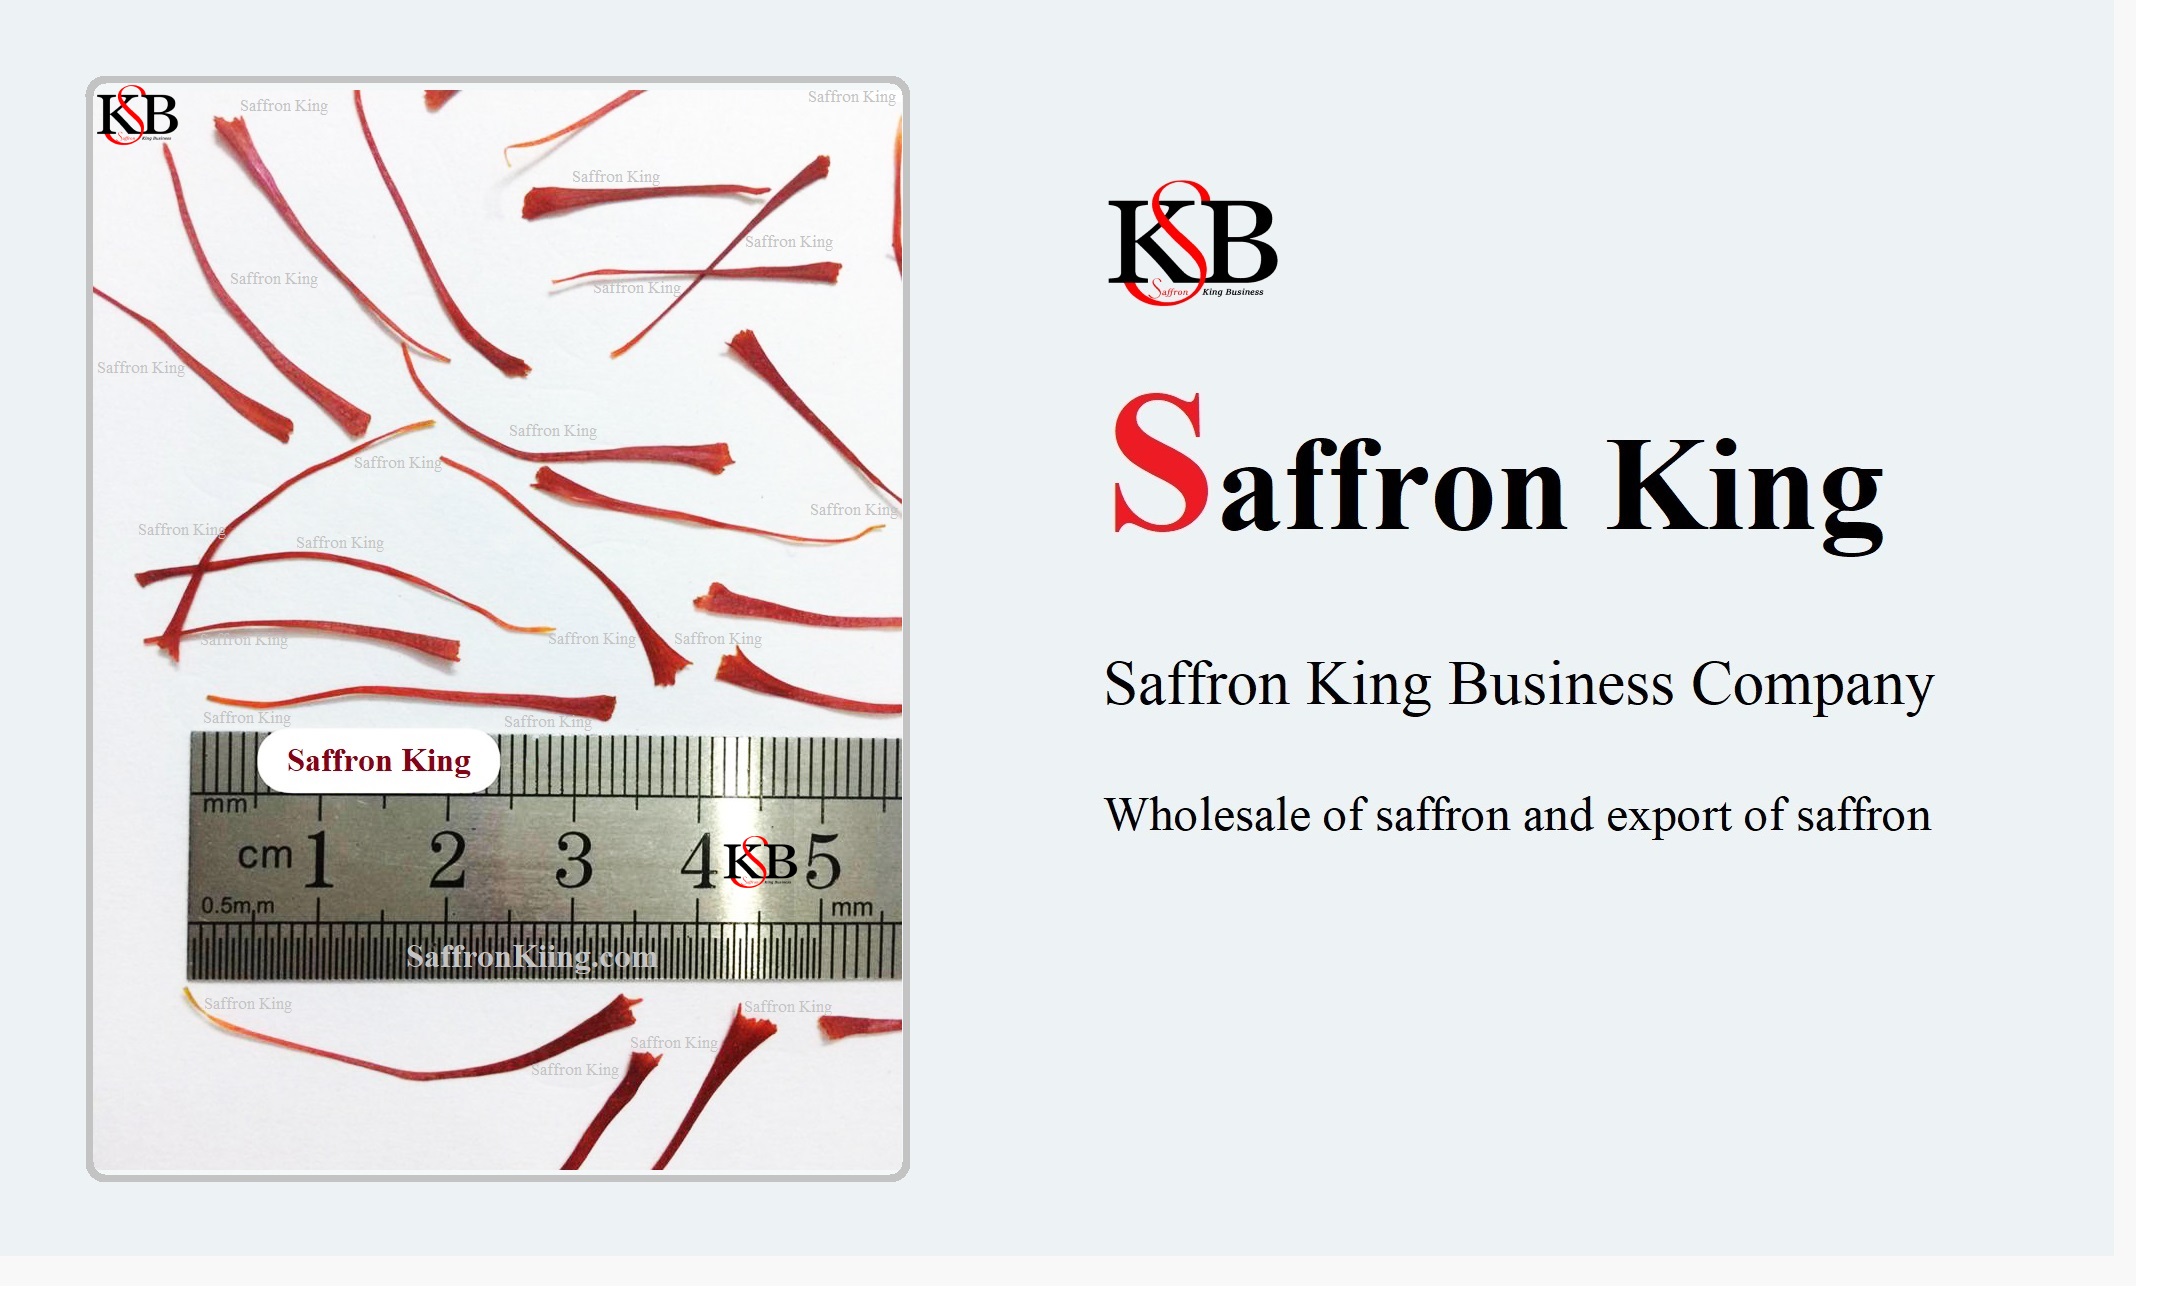 where to buy saffron?